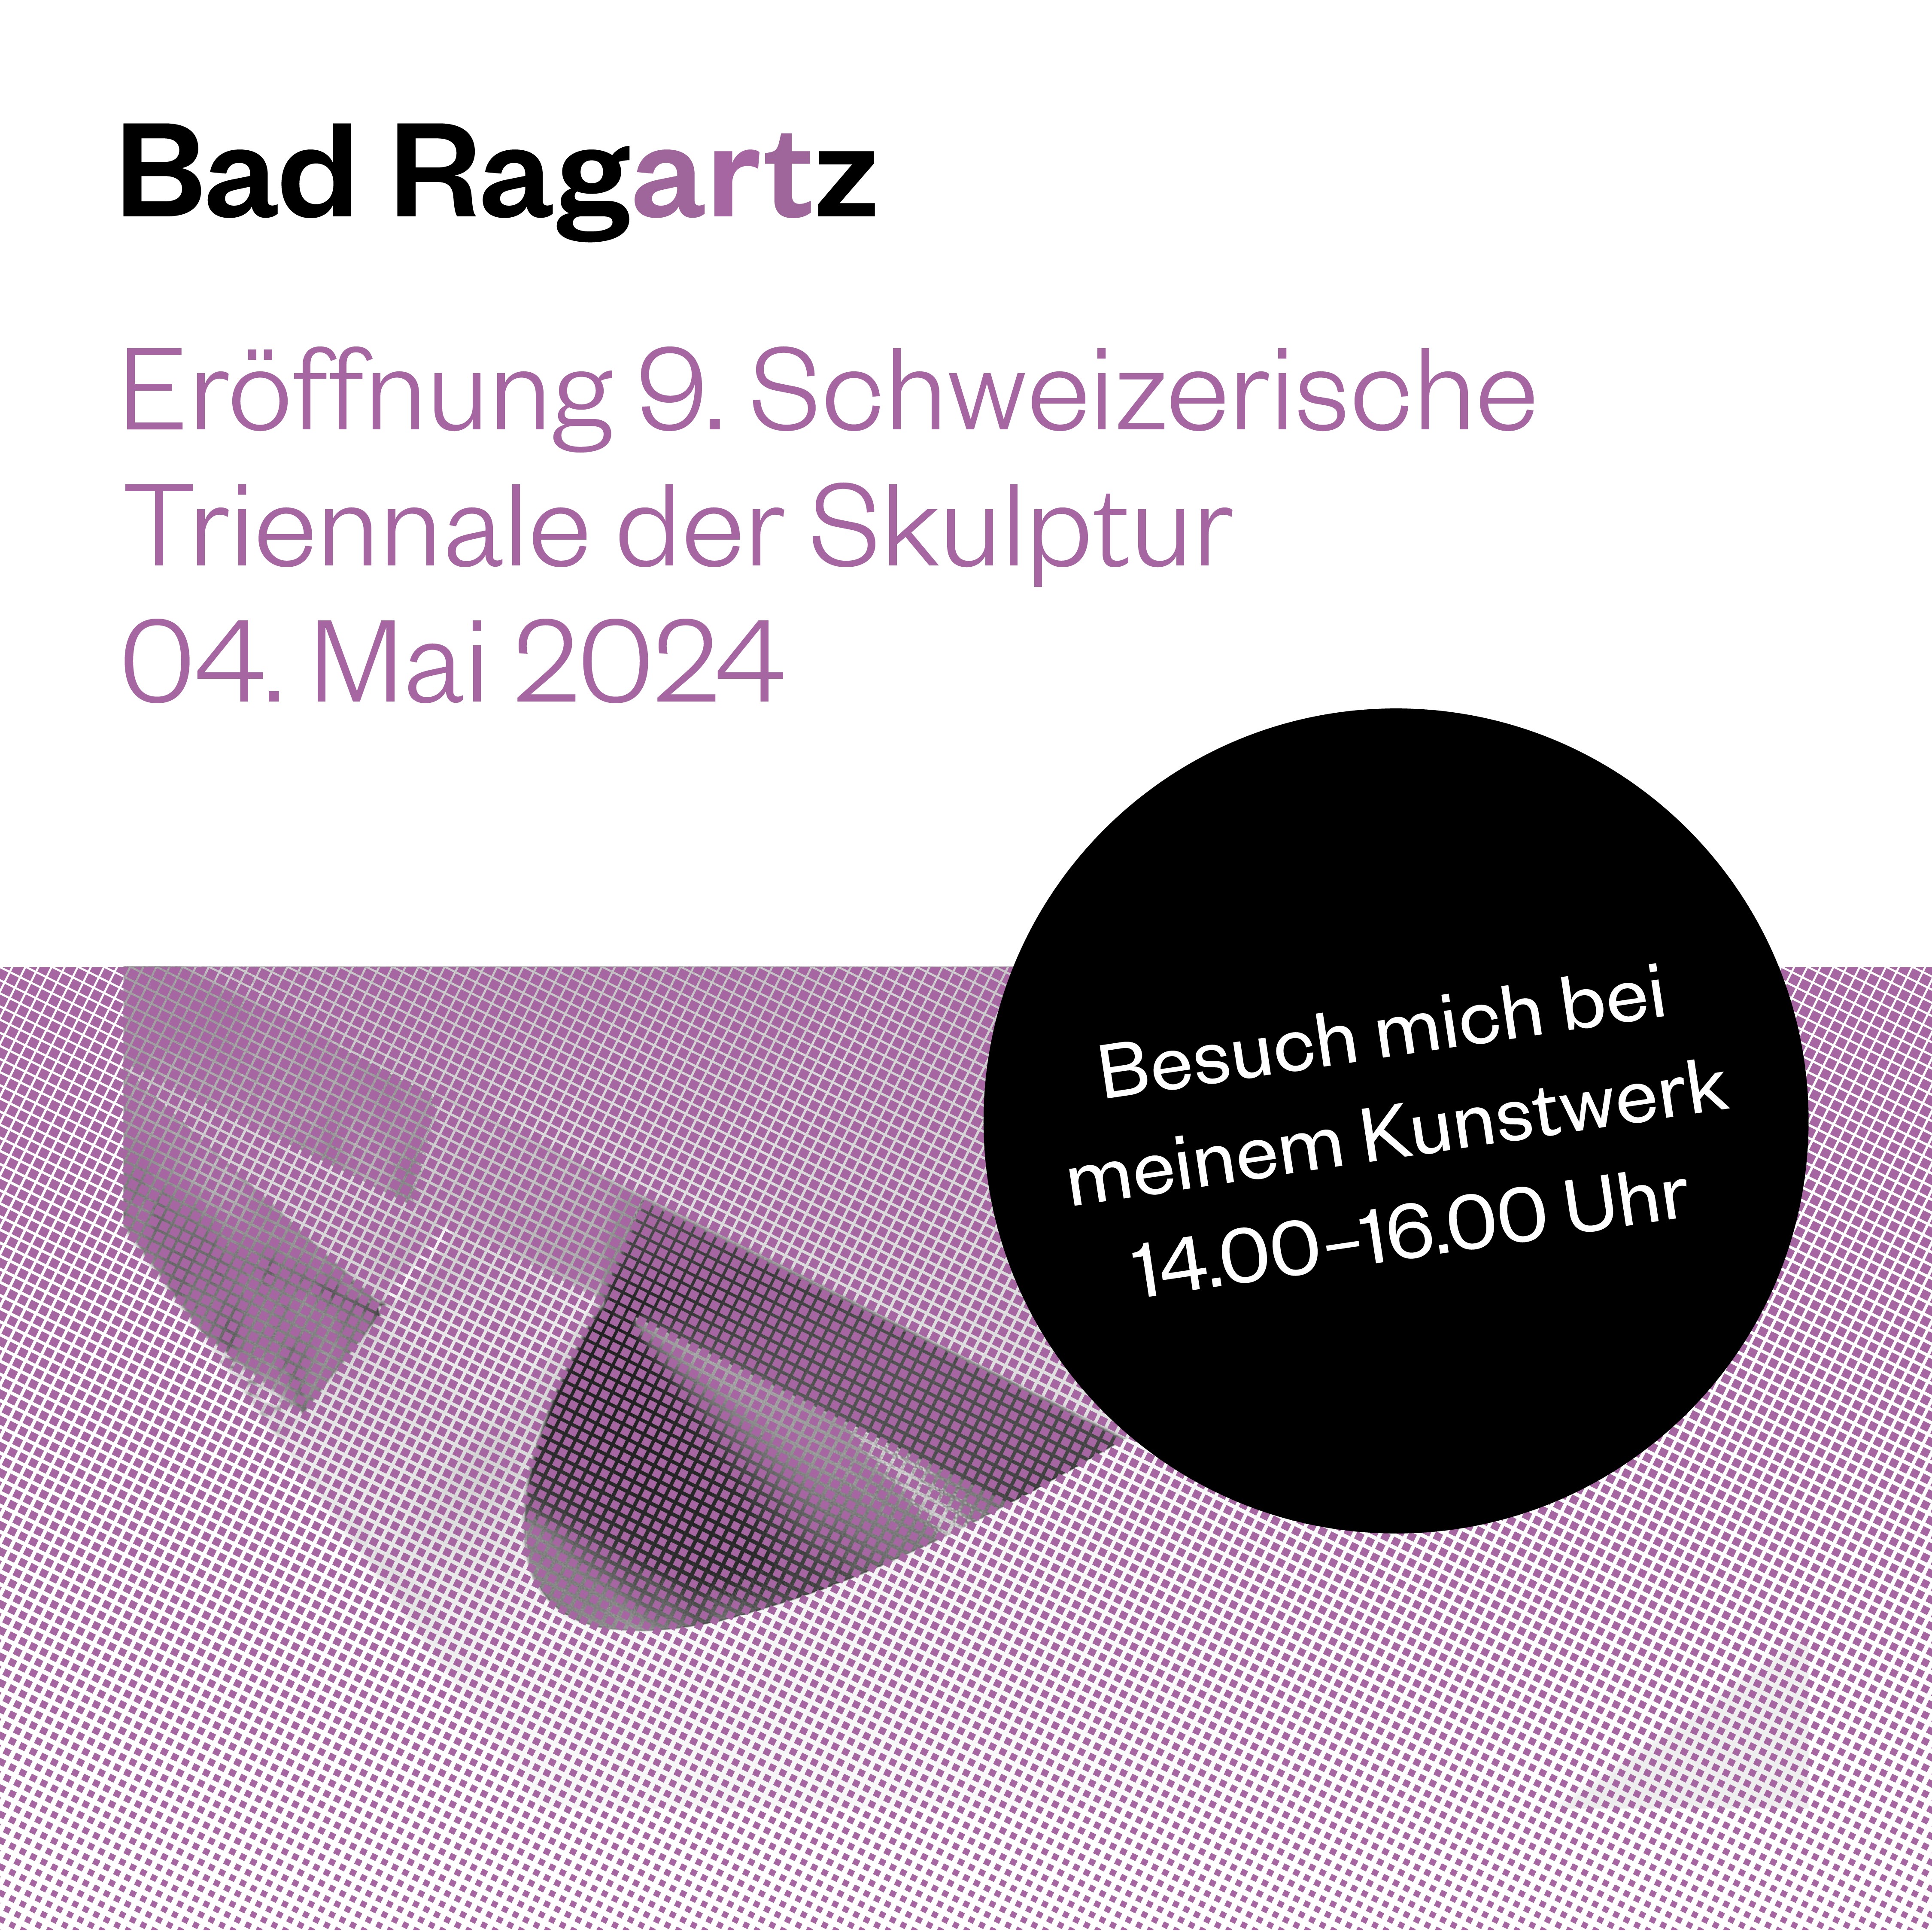 Bad Ragartz Eröffnung